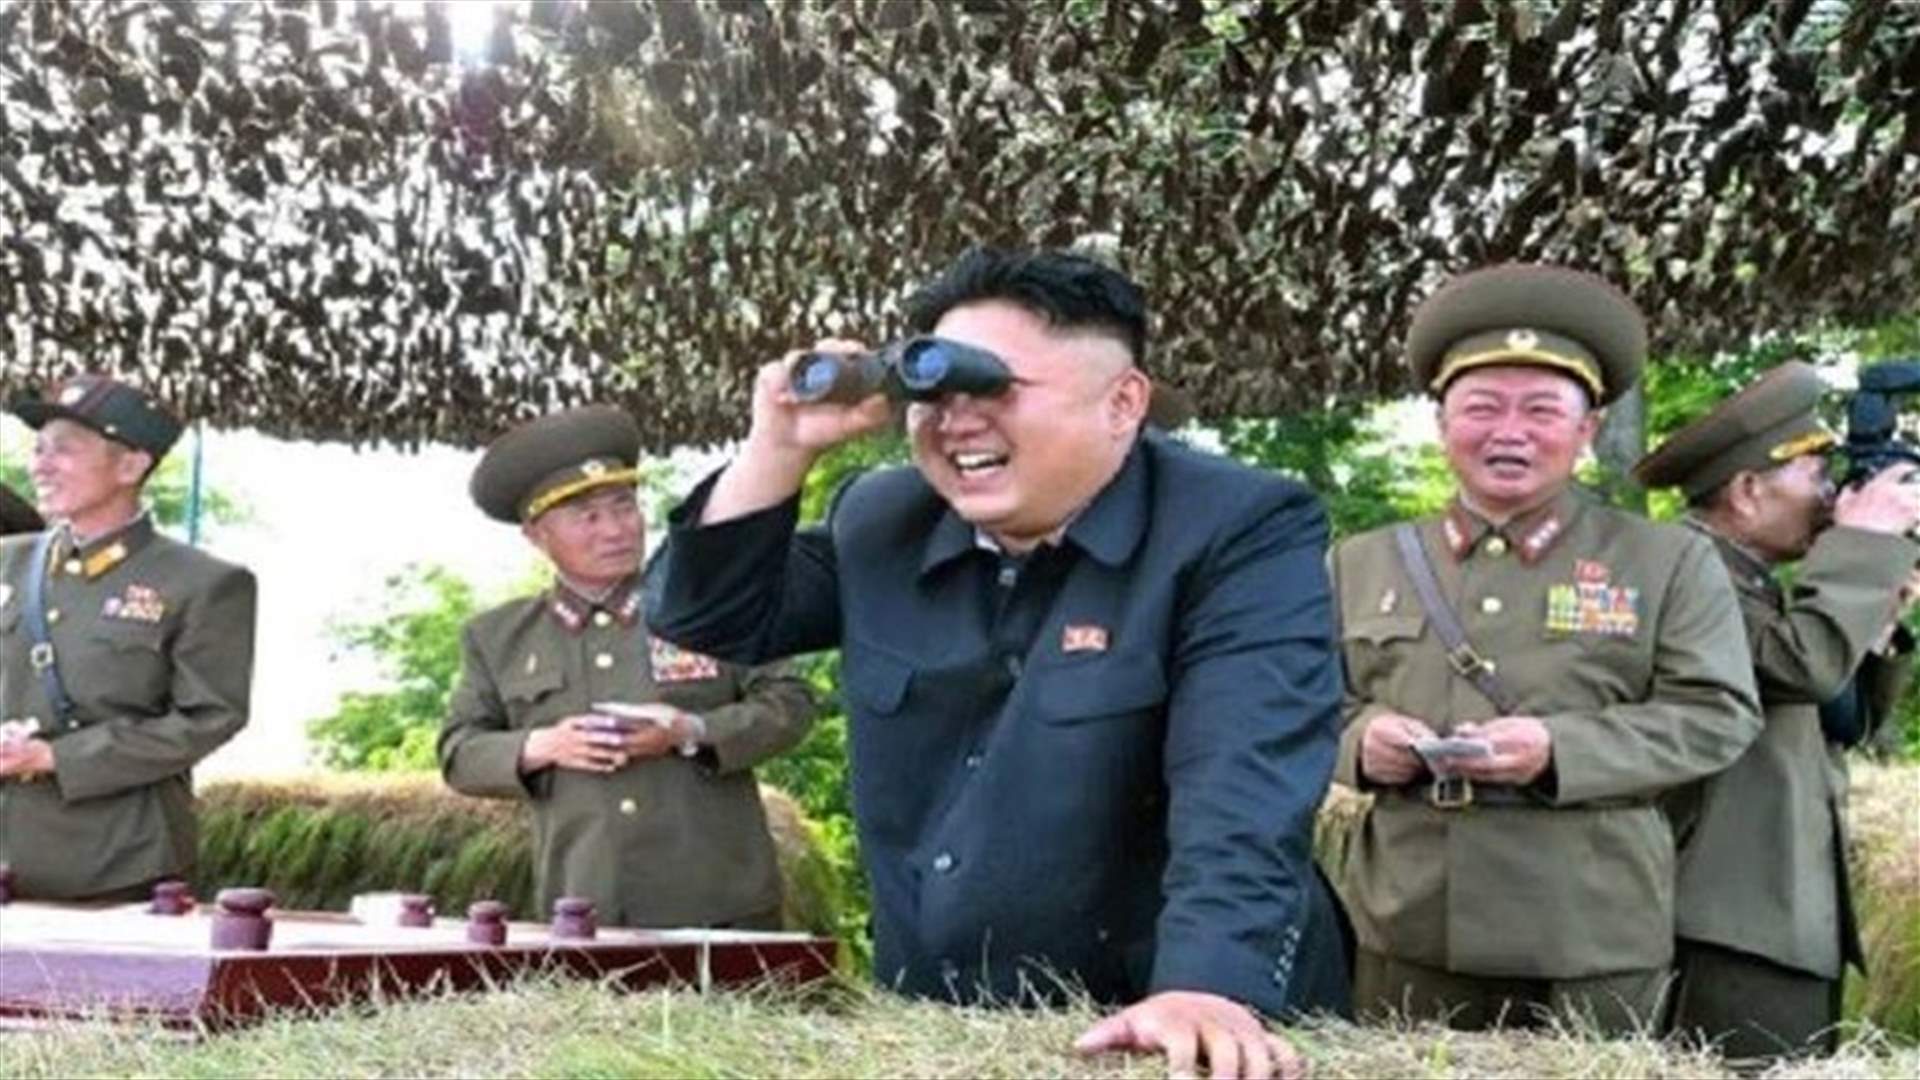 تدريب للجيش الكوري الشمالي يحاكي هجوما على مقر رئاسة كوريا الجنوبية